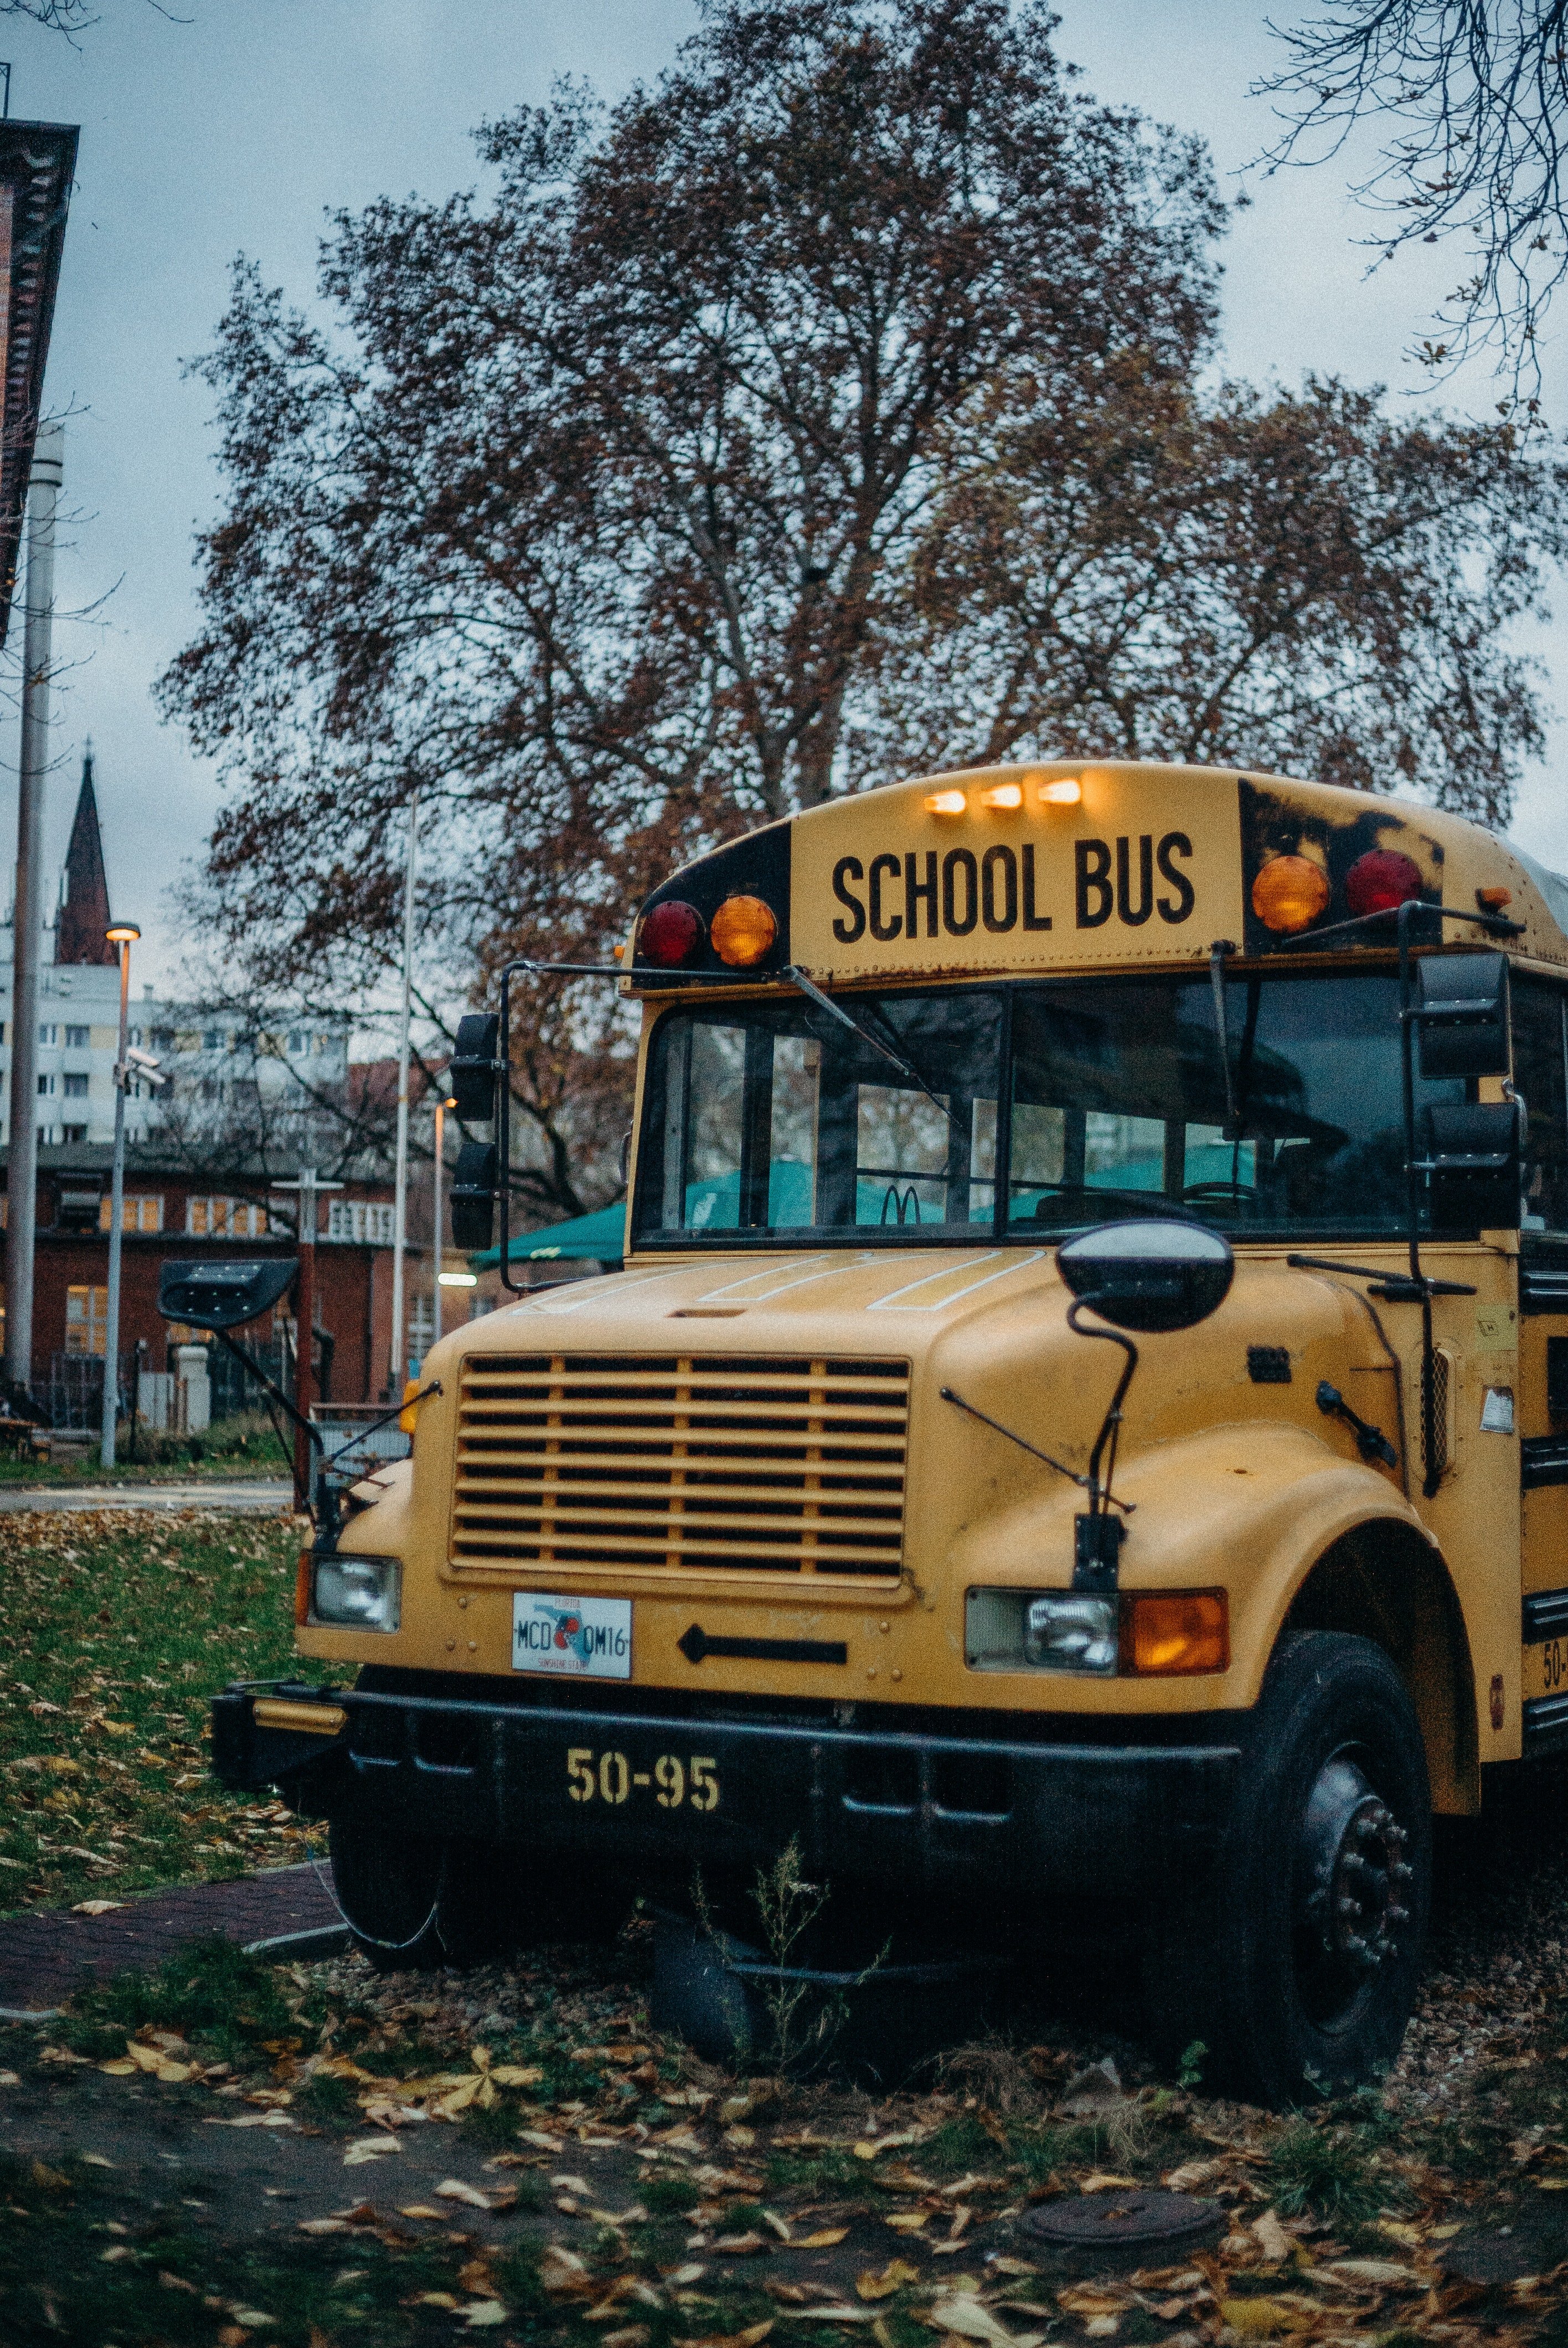 Als Derek den Schulbusfahrer traf, verstand er, warum Candace zögerte, mit dem Bus zur Schule zu fahren. | Quelle: Pexels